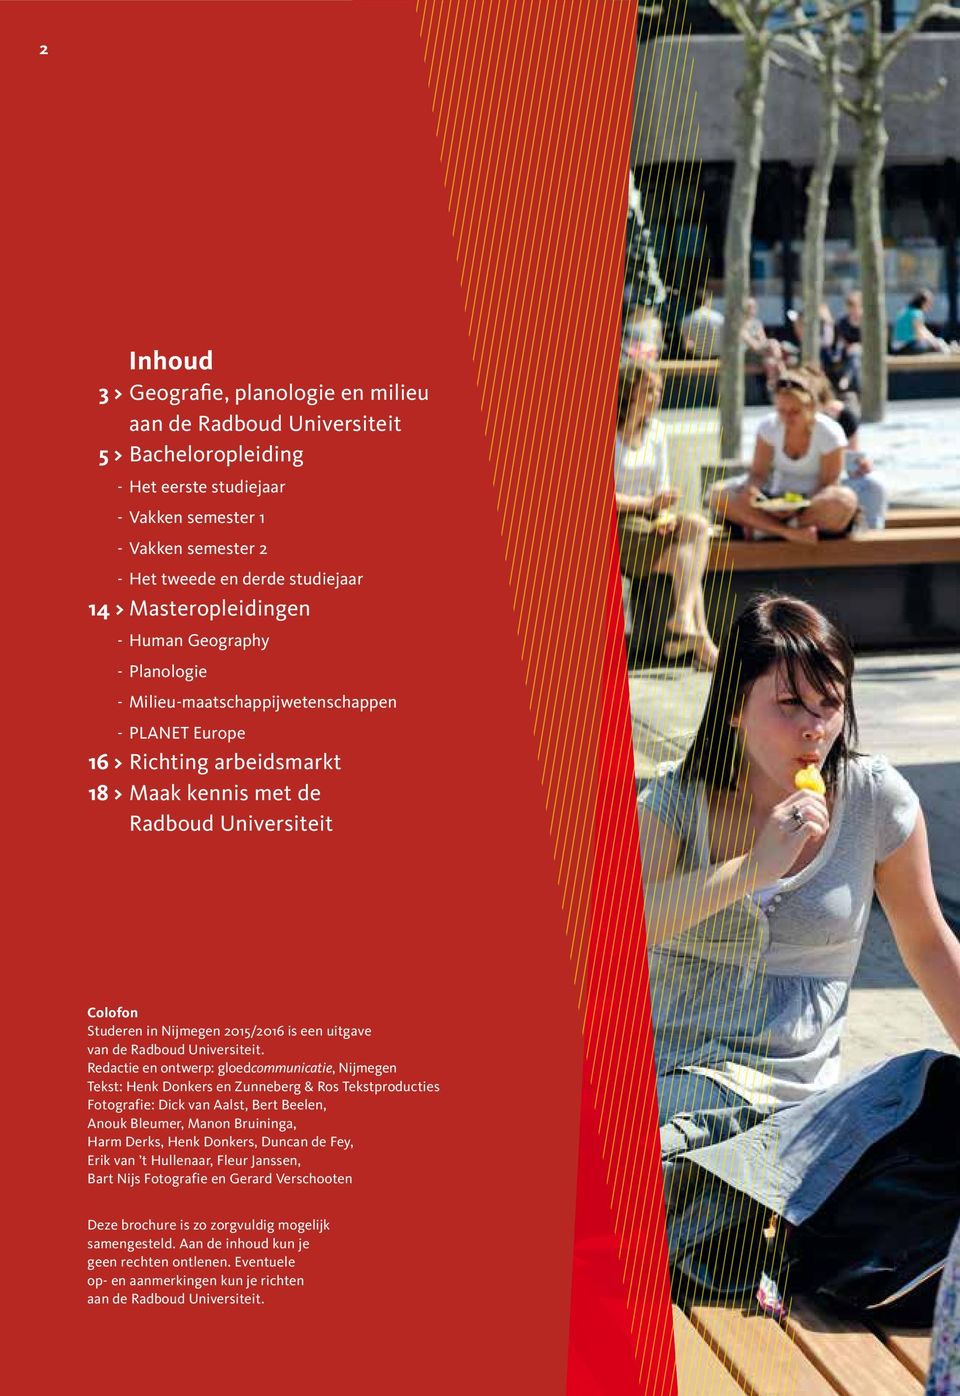 Nijmegen 2015/2016 is een uitgave van de Radboud Universiteit.